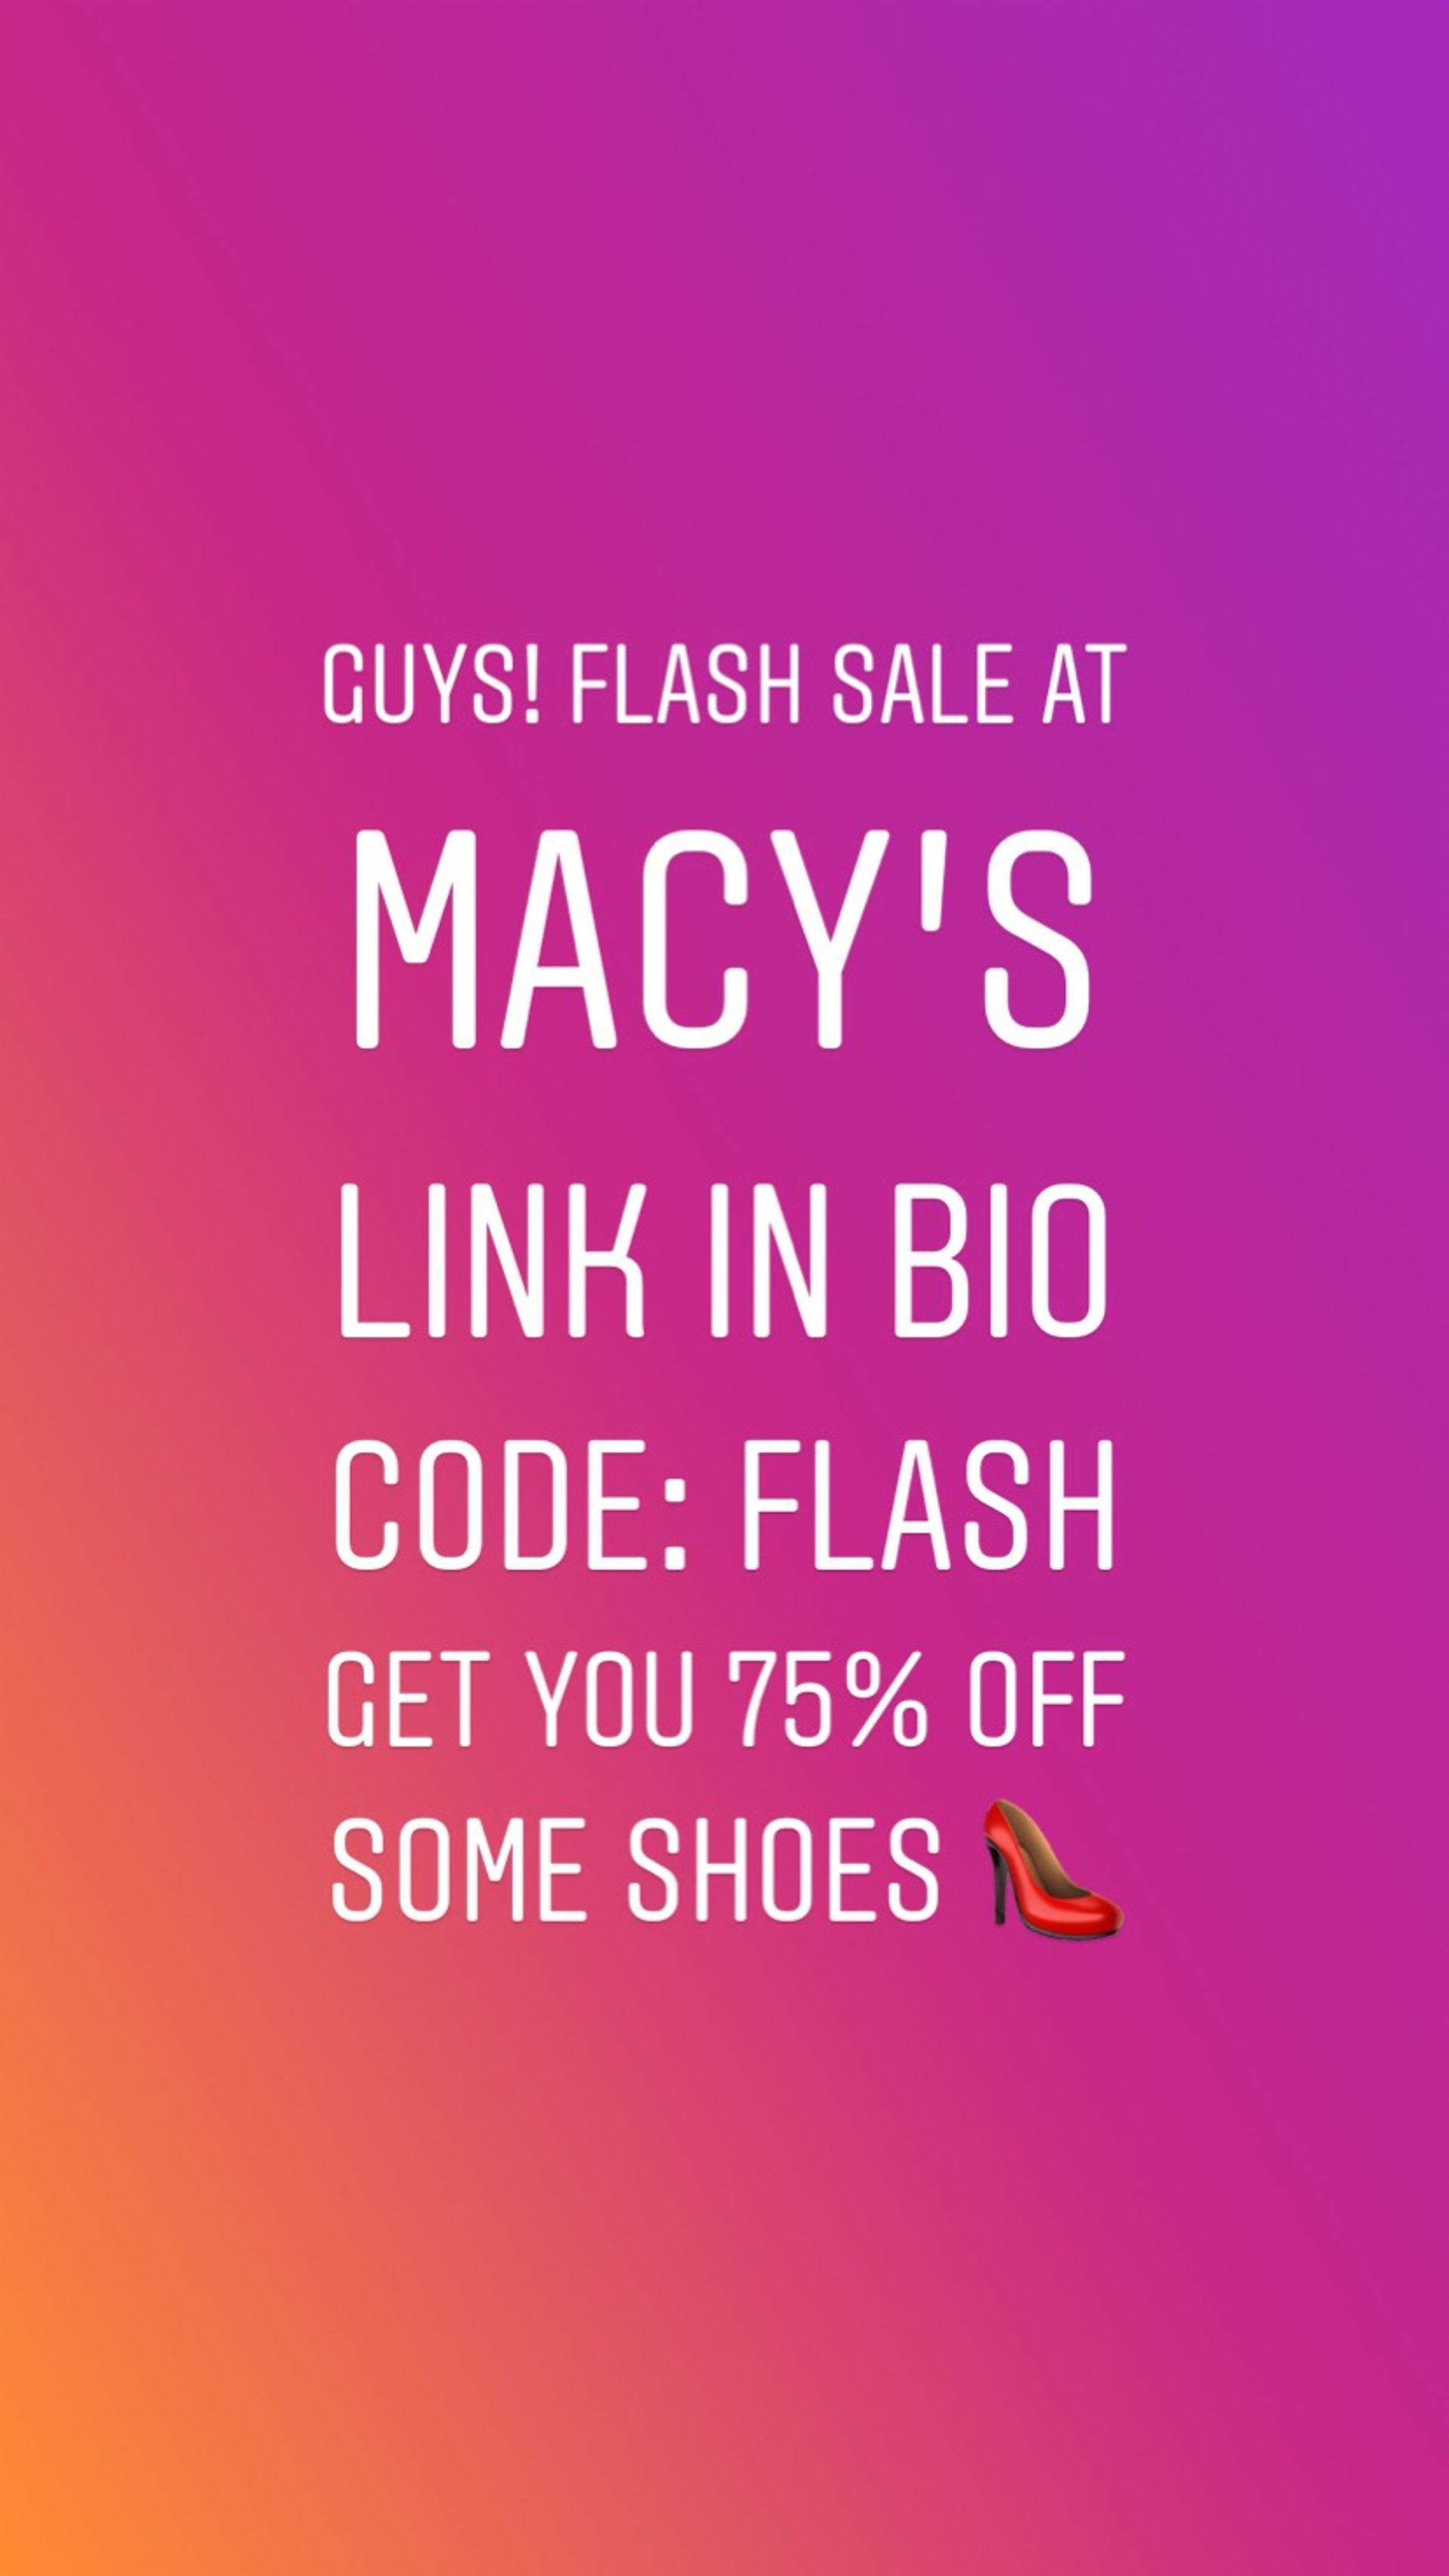 macy's flash sale shoes